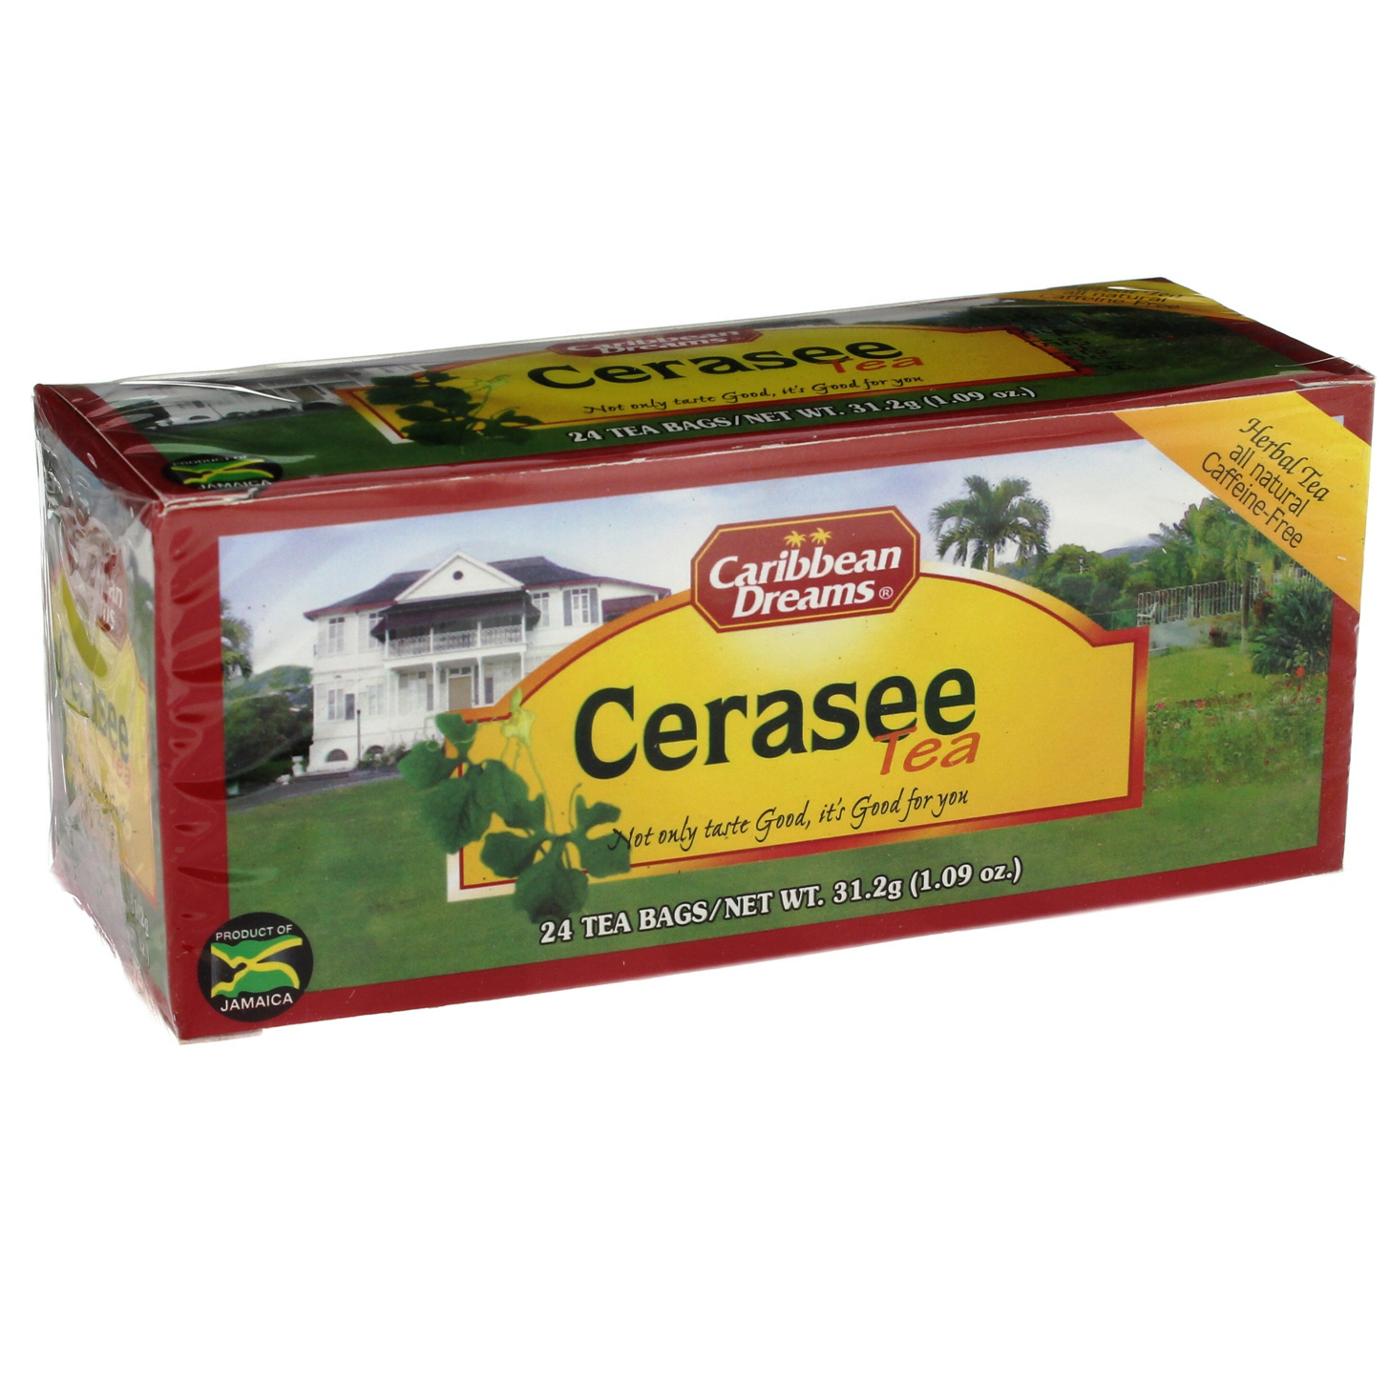 Caribbean Dreams Cerasee Tea; image 1 of 2